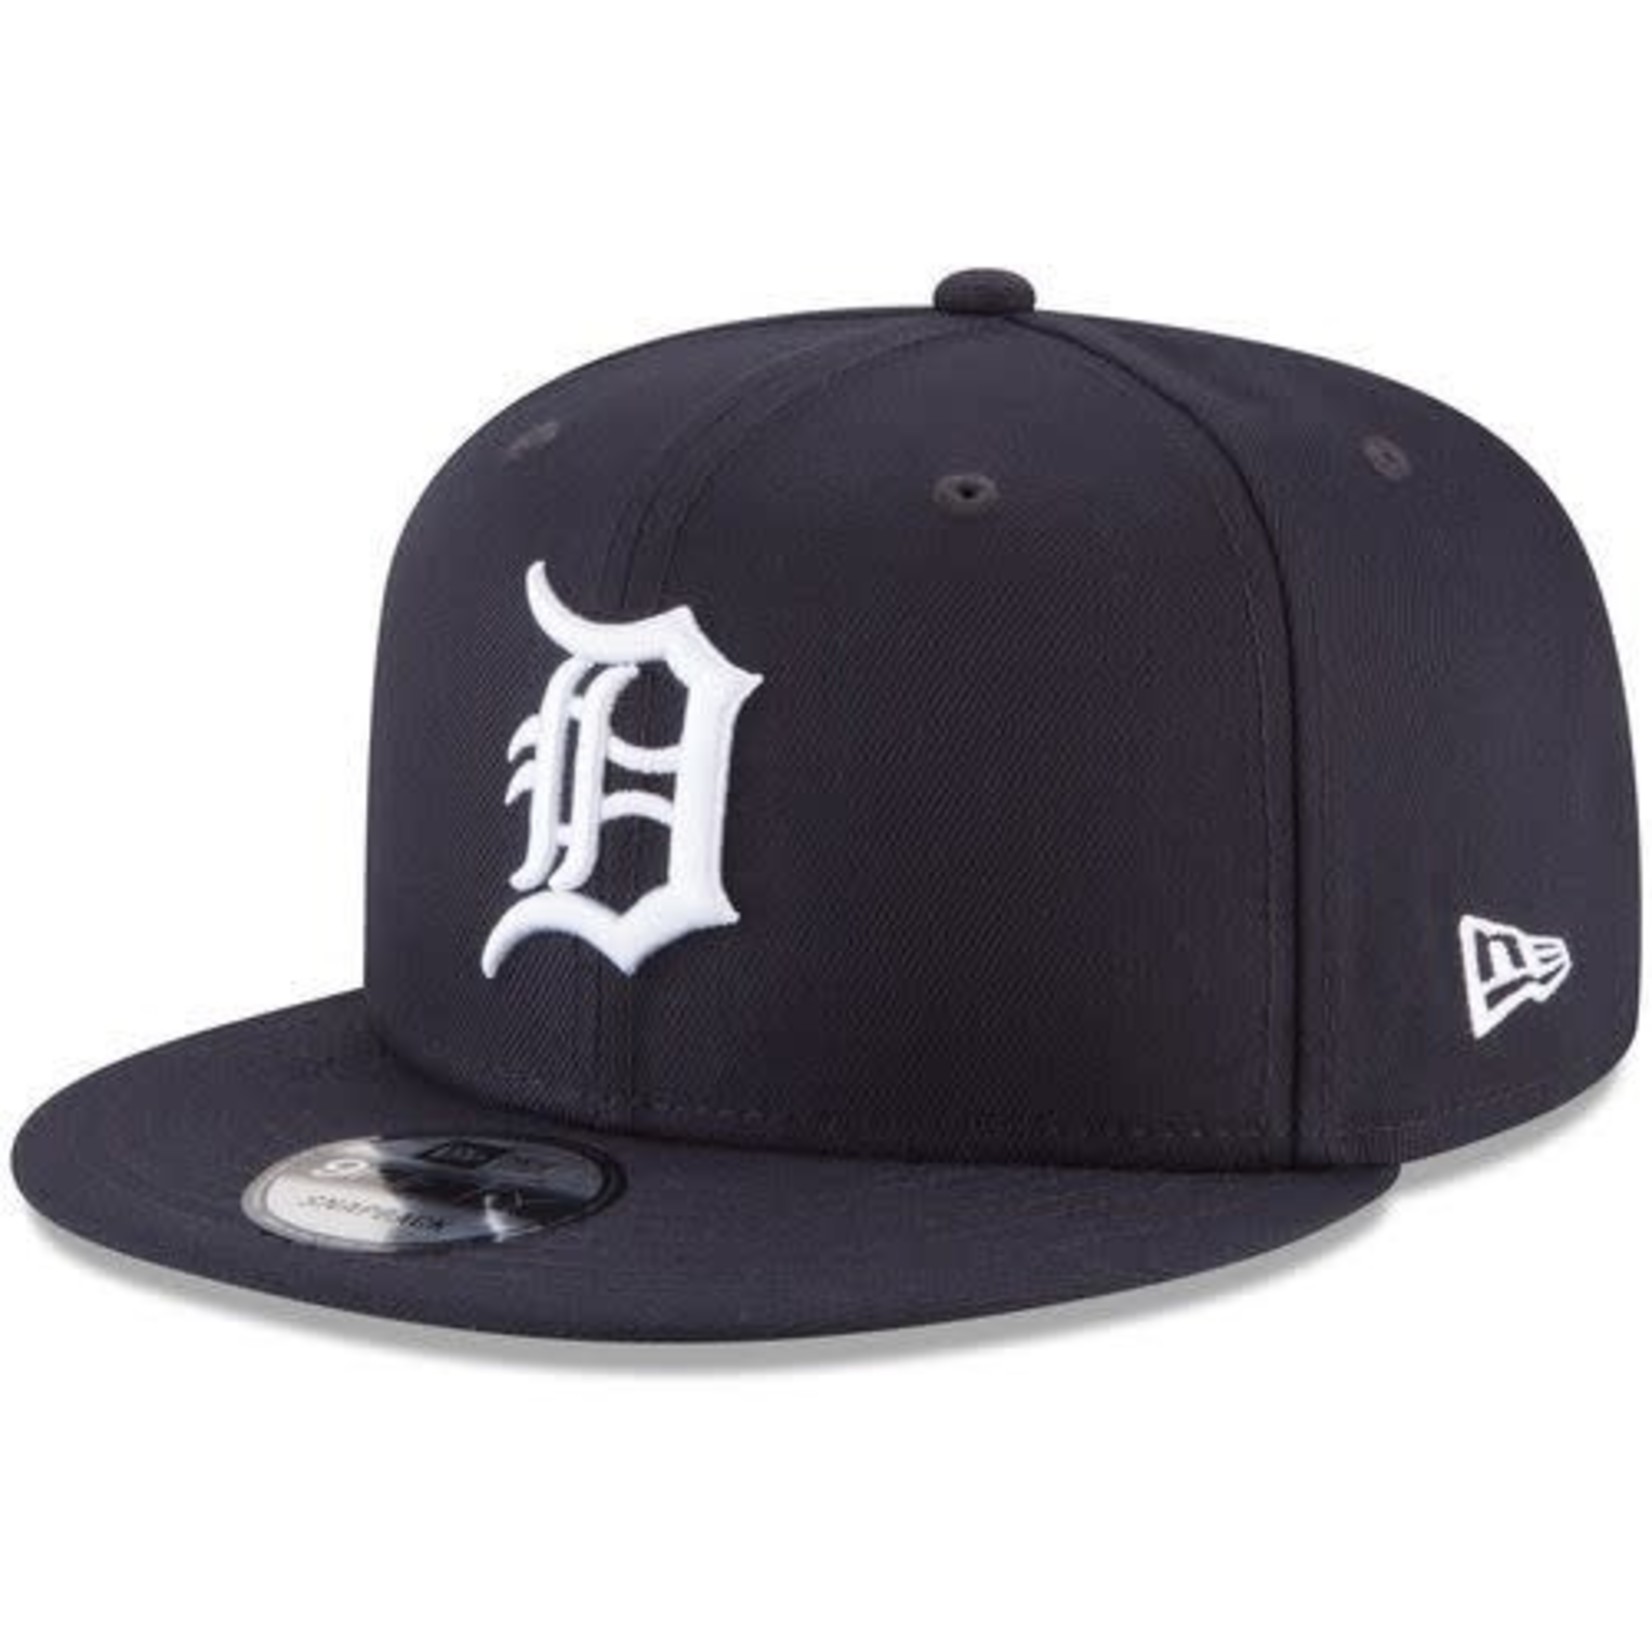 New Era Men's New Era Navy Detroit Tigers Team Color 9FIFTY Snapback Hat